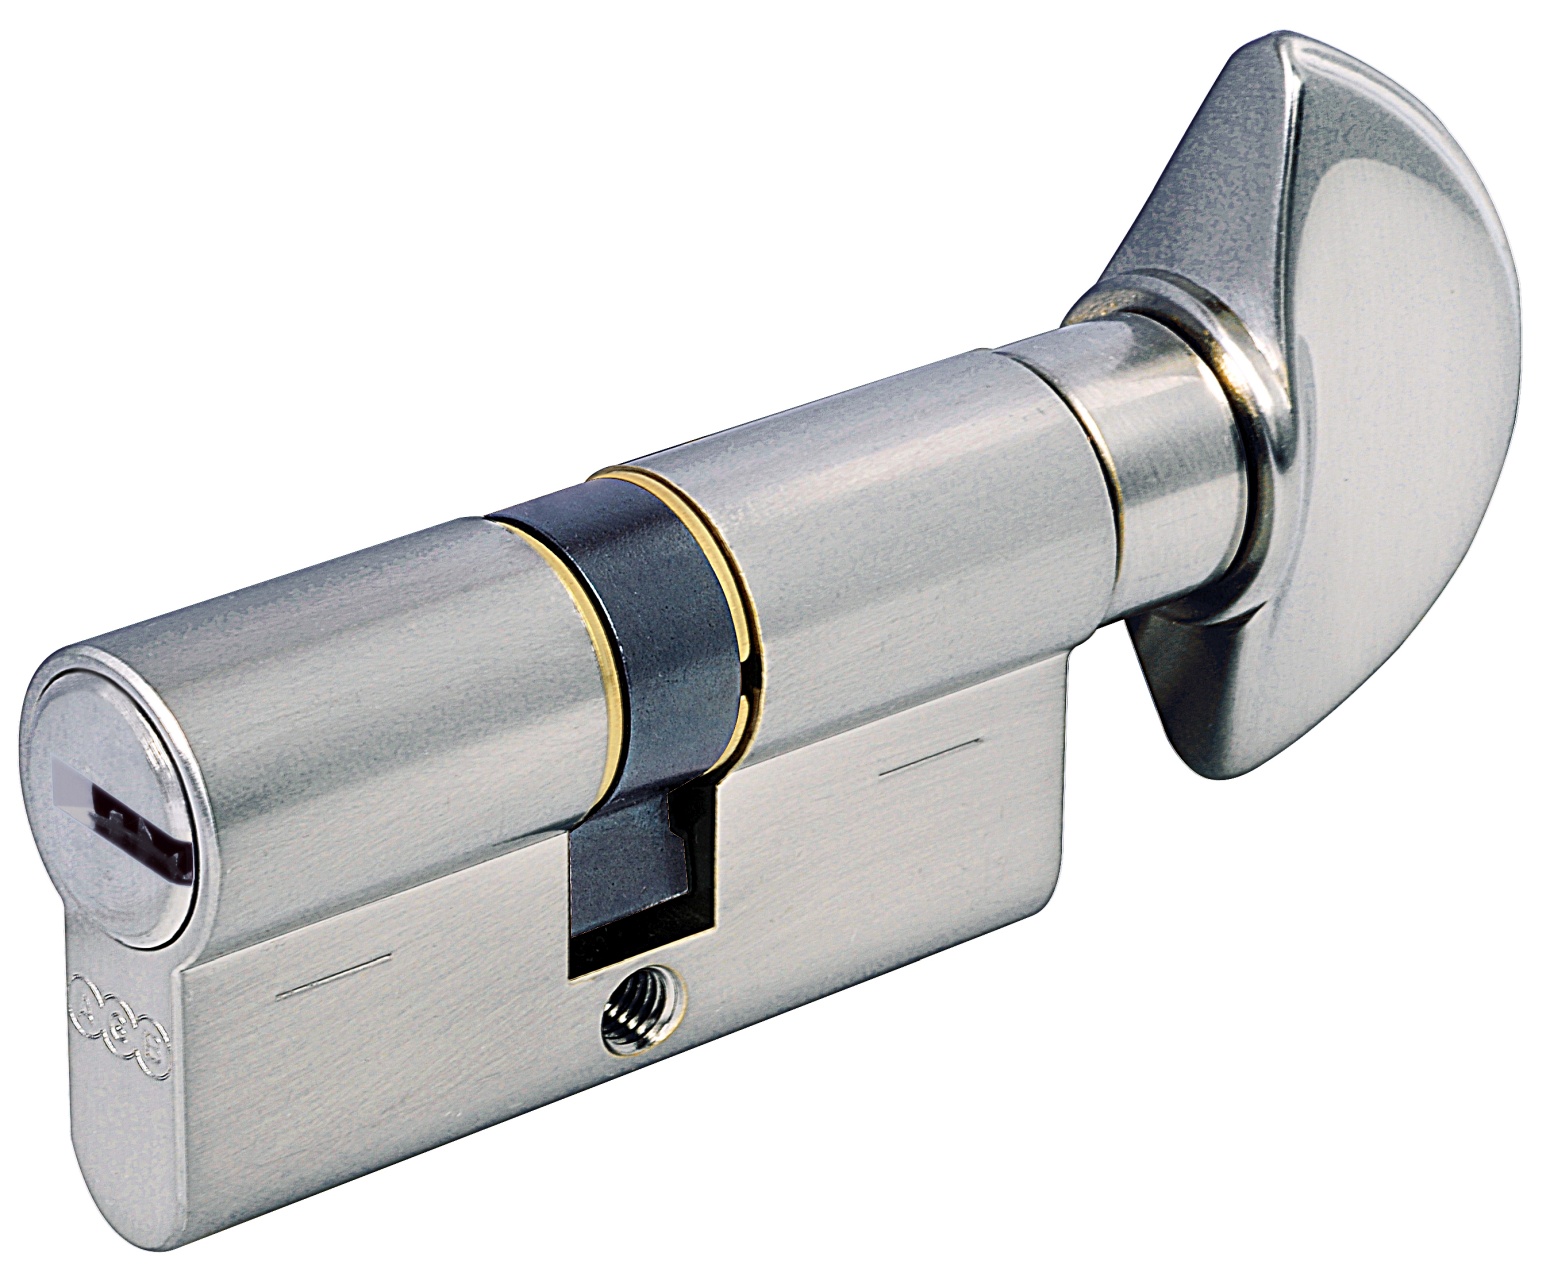 AGB -  Cilindro SCUDO 5000 PS frizionato anti bamping con chiave e pomolo - col. NICHELATO OPACO - lunghezza 95 - misura 40 - 10 - 45